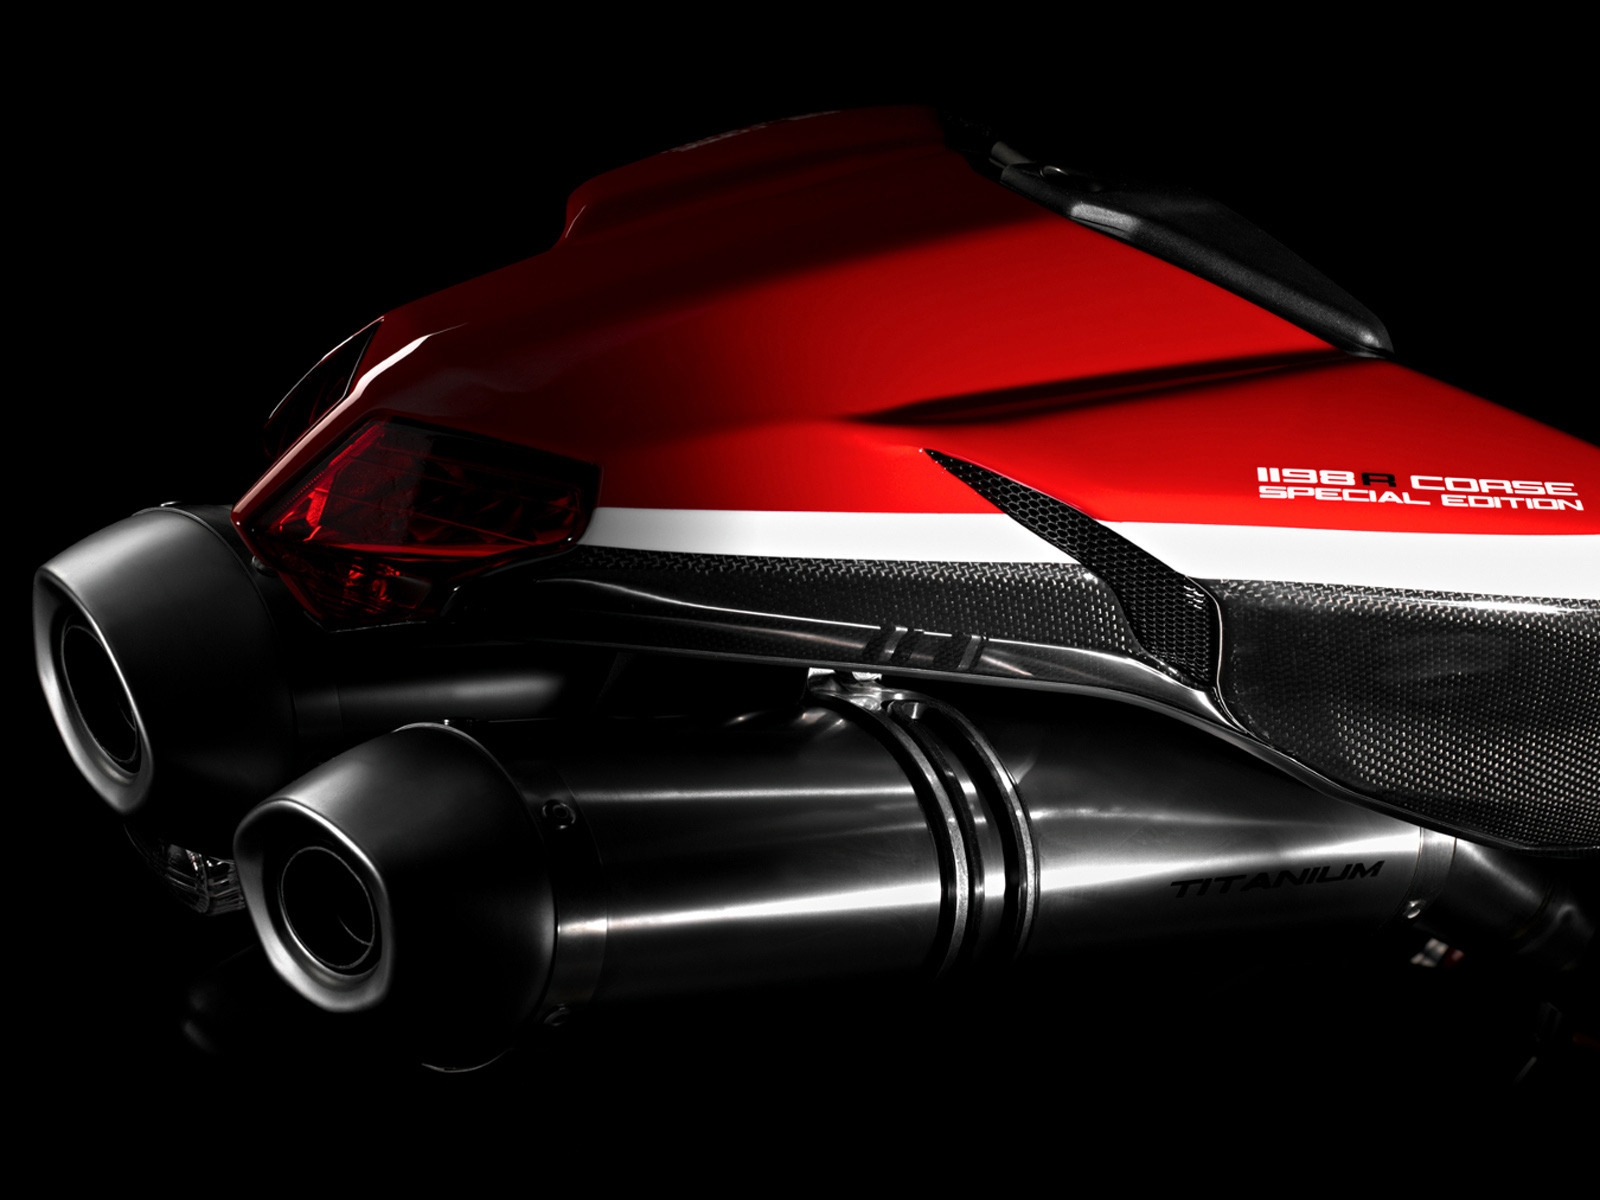 Ducati Superbike-1198-R-Corse Rear for 1600 x 1200 resolution